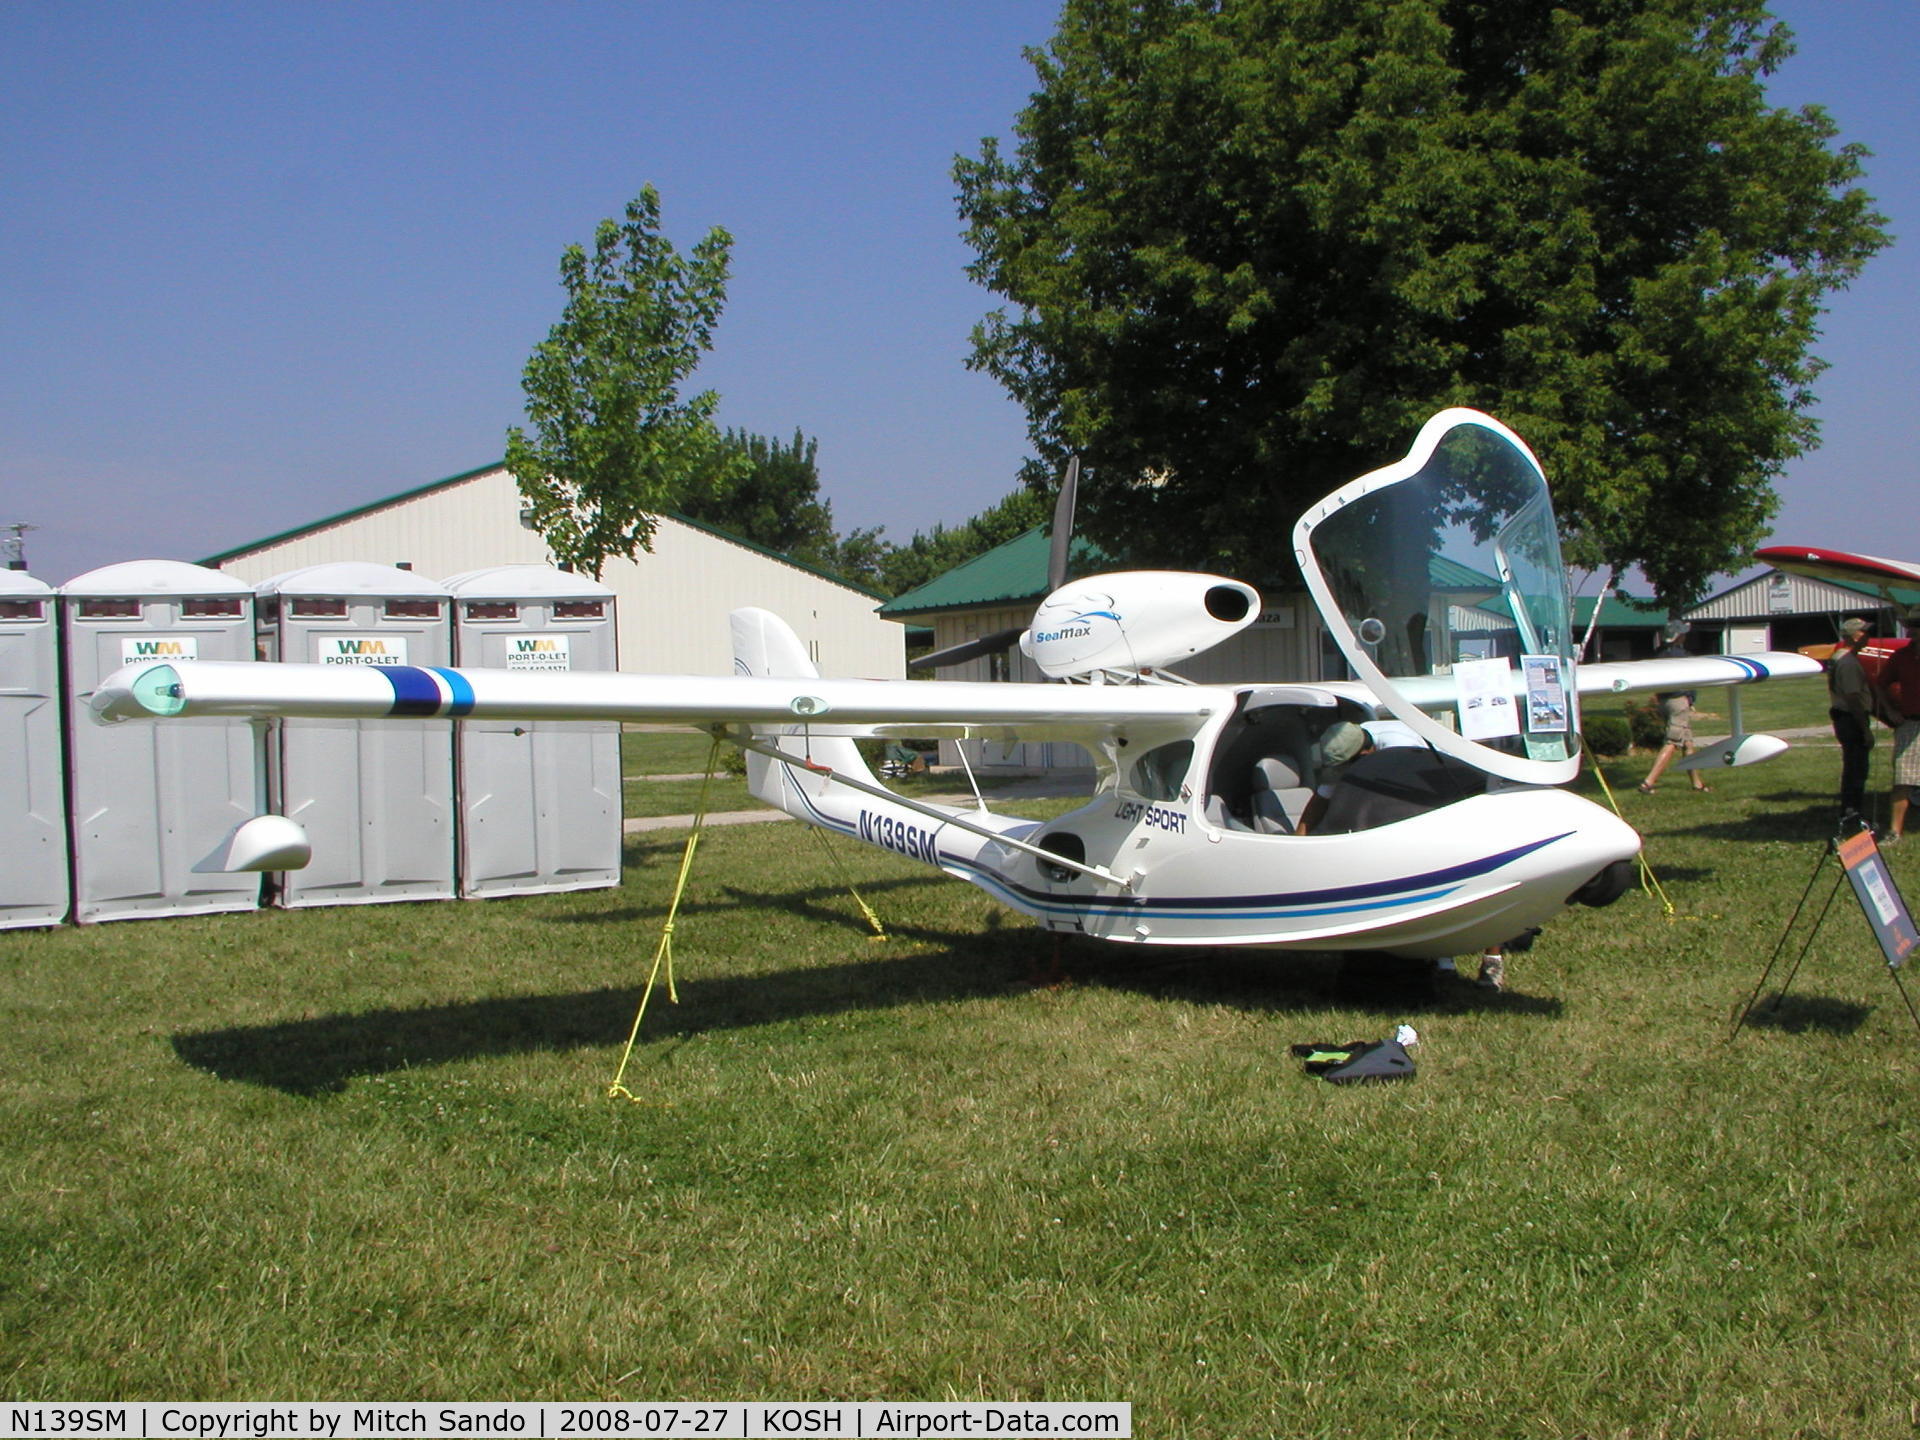 N139SM, 2007 Airmax SeaMax M-22 C/N 41LSA, EAA AirVenture 2008.